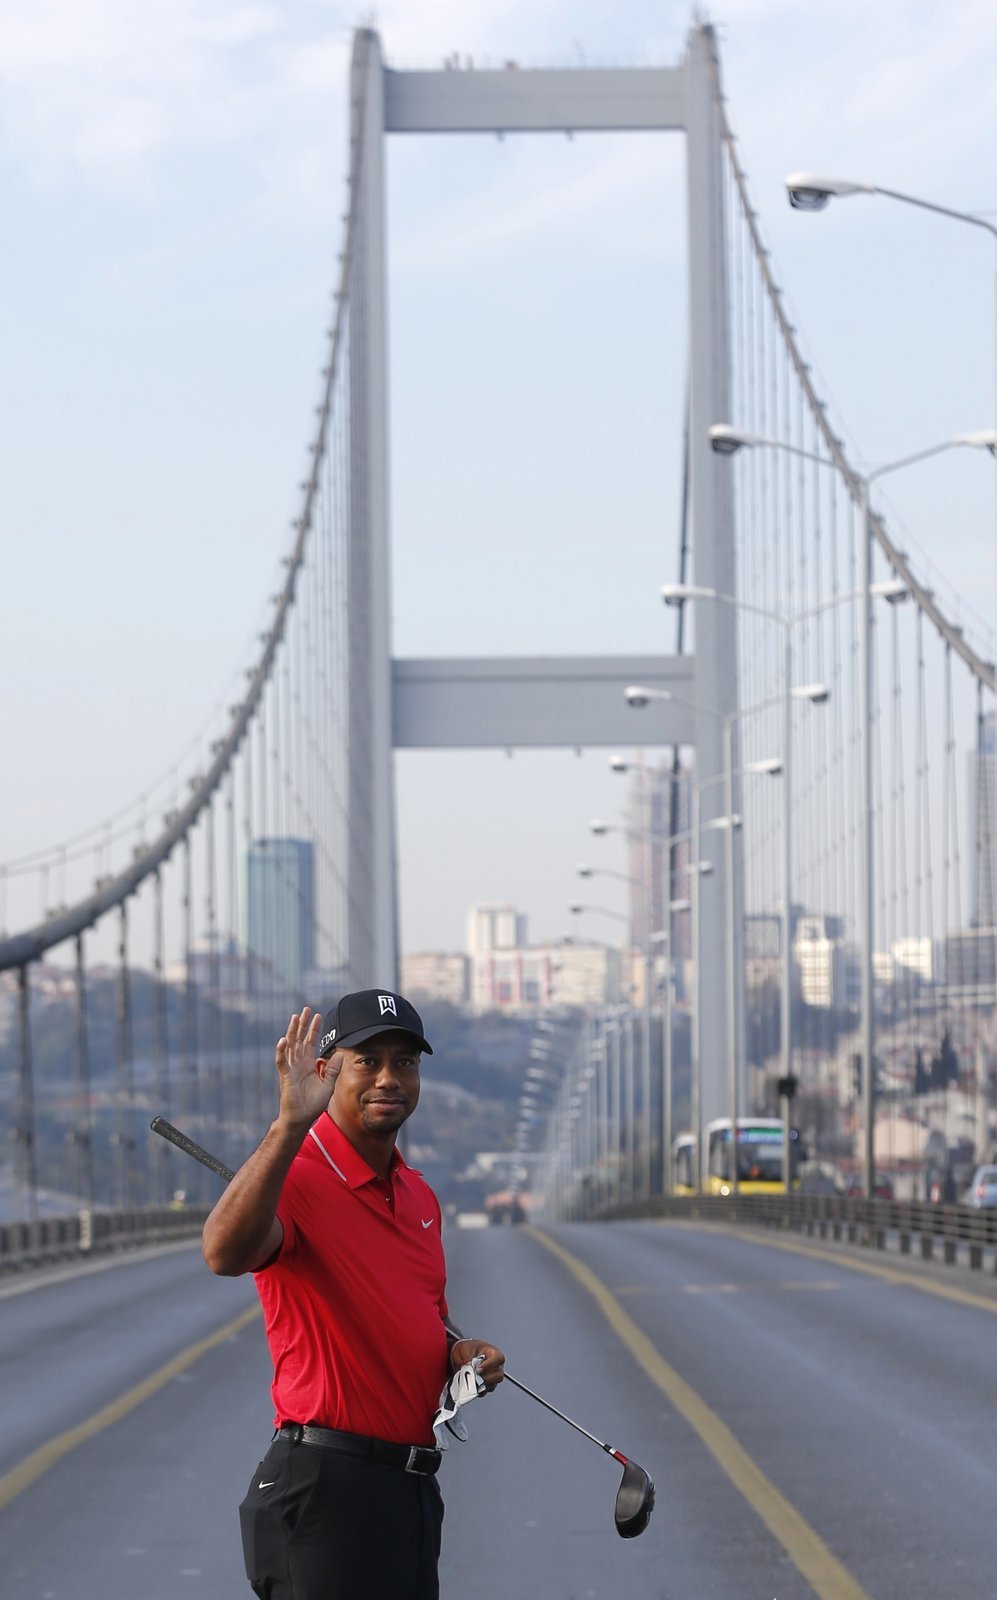 Další výnosná akce pro Tigera Woodse. Nejznámější golfista světa odpaloval míčky na Bosporském mostu, mířil tedy z evropské části Istanbulu až do Asie. Za pár dní v Turecku inkasuje přes 57 milionů korun.